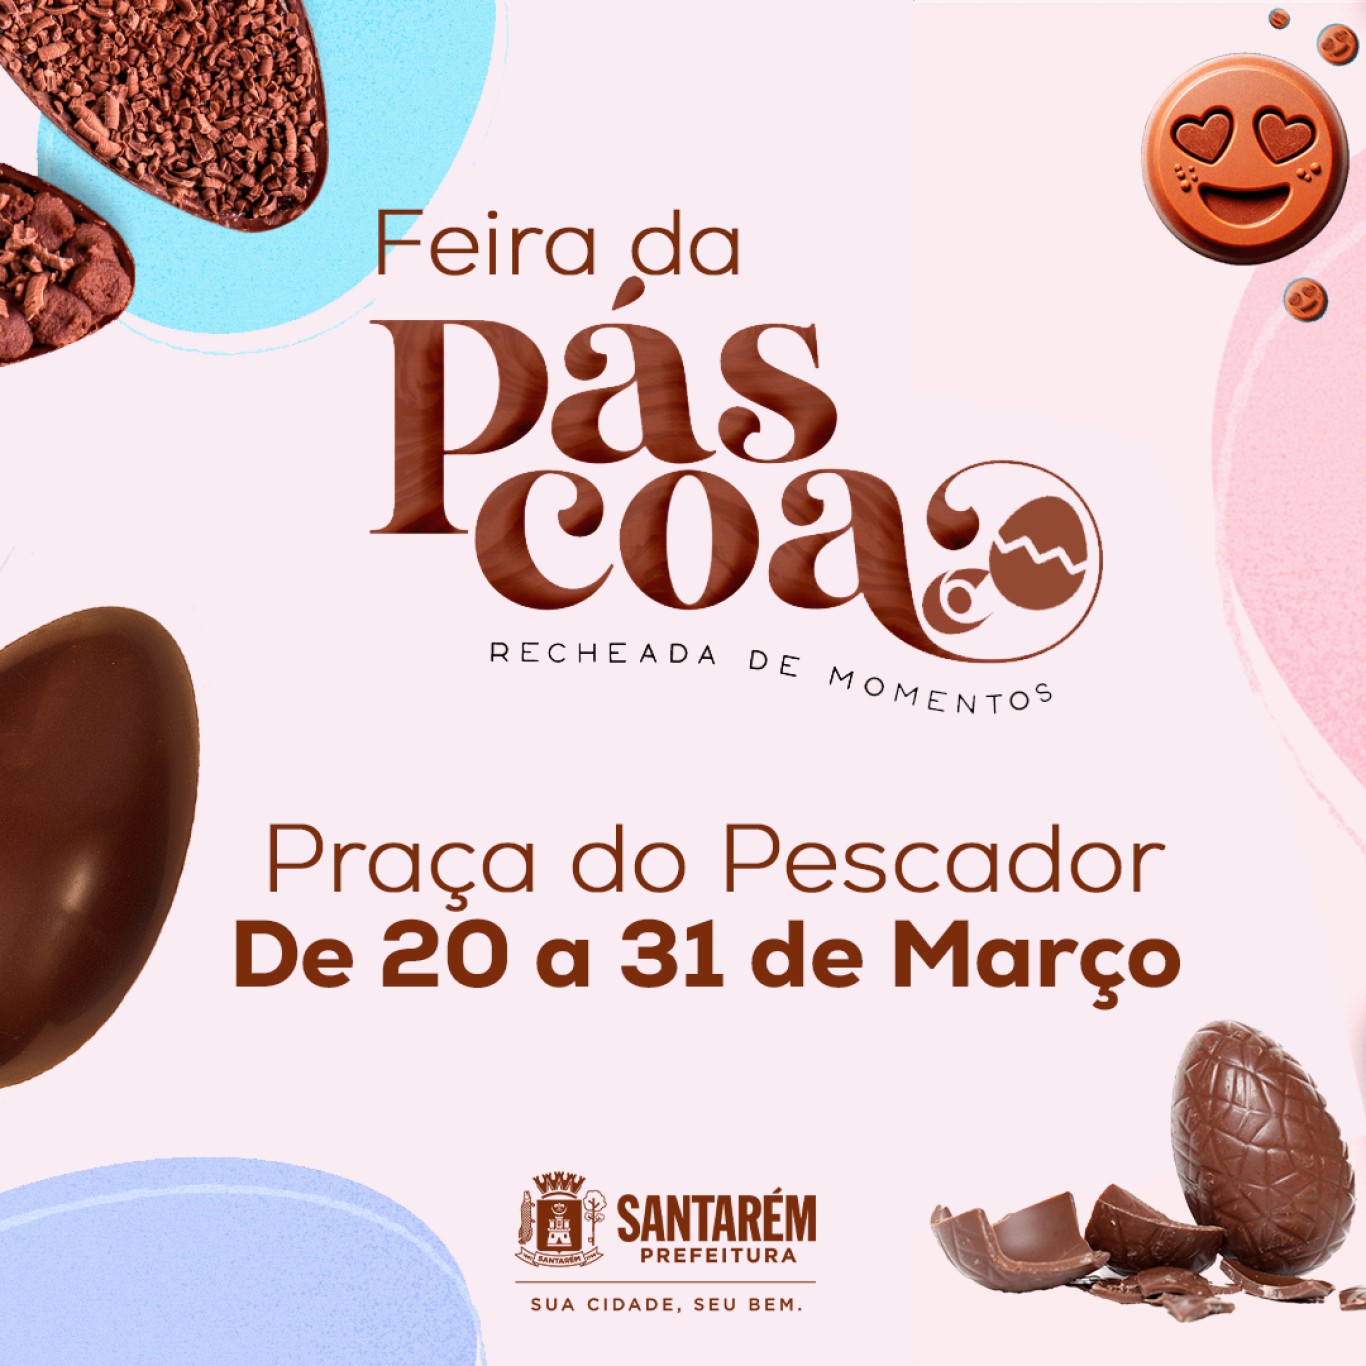 Feira da Páscoa: Prefeitura destinará local para comercialização de chocolates durante o período da Páscoa